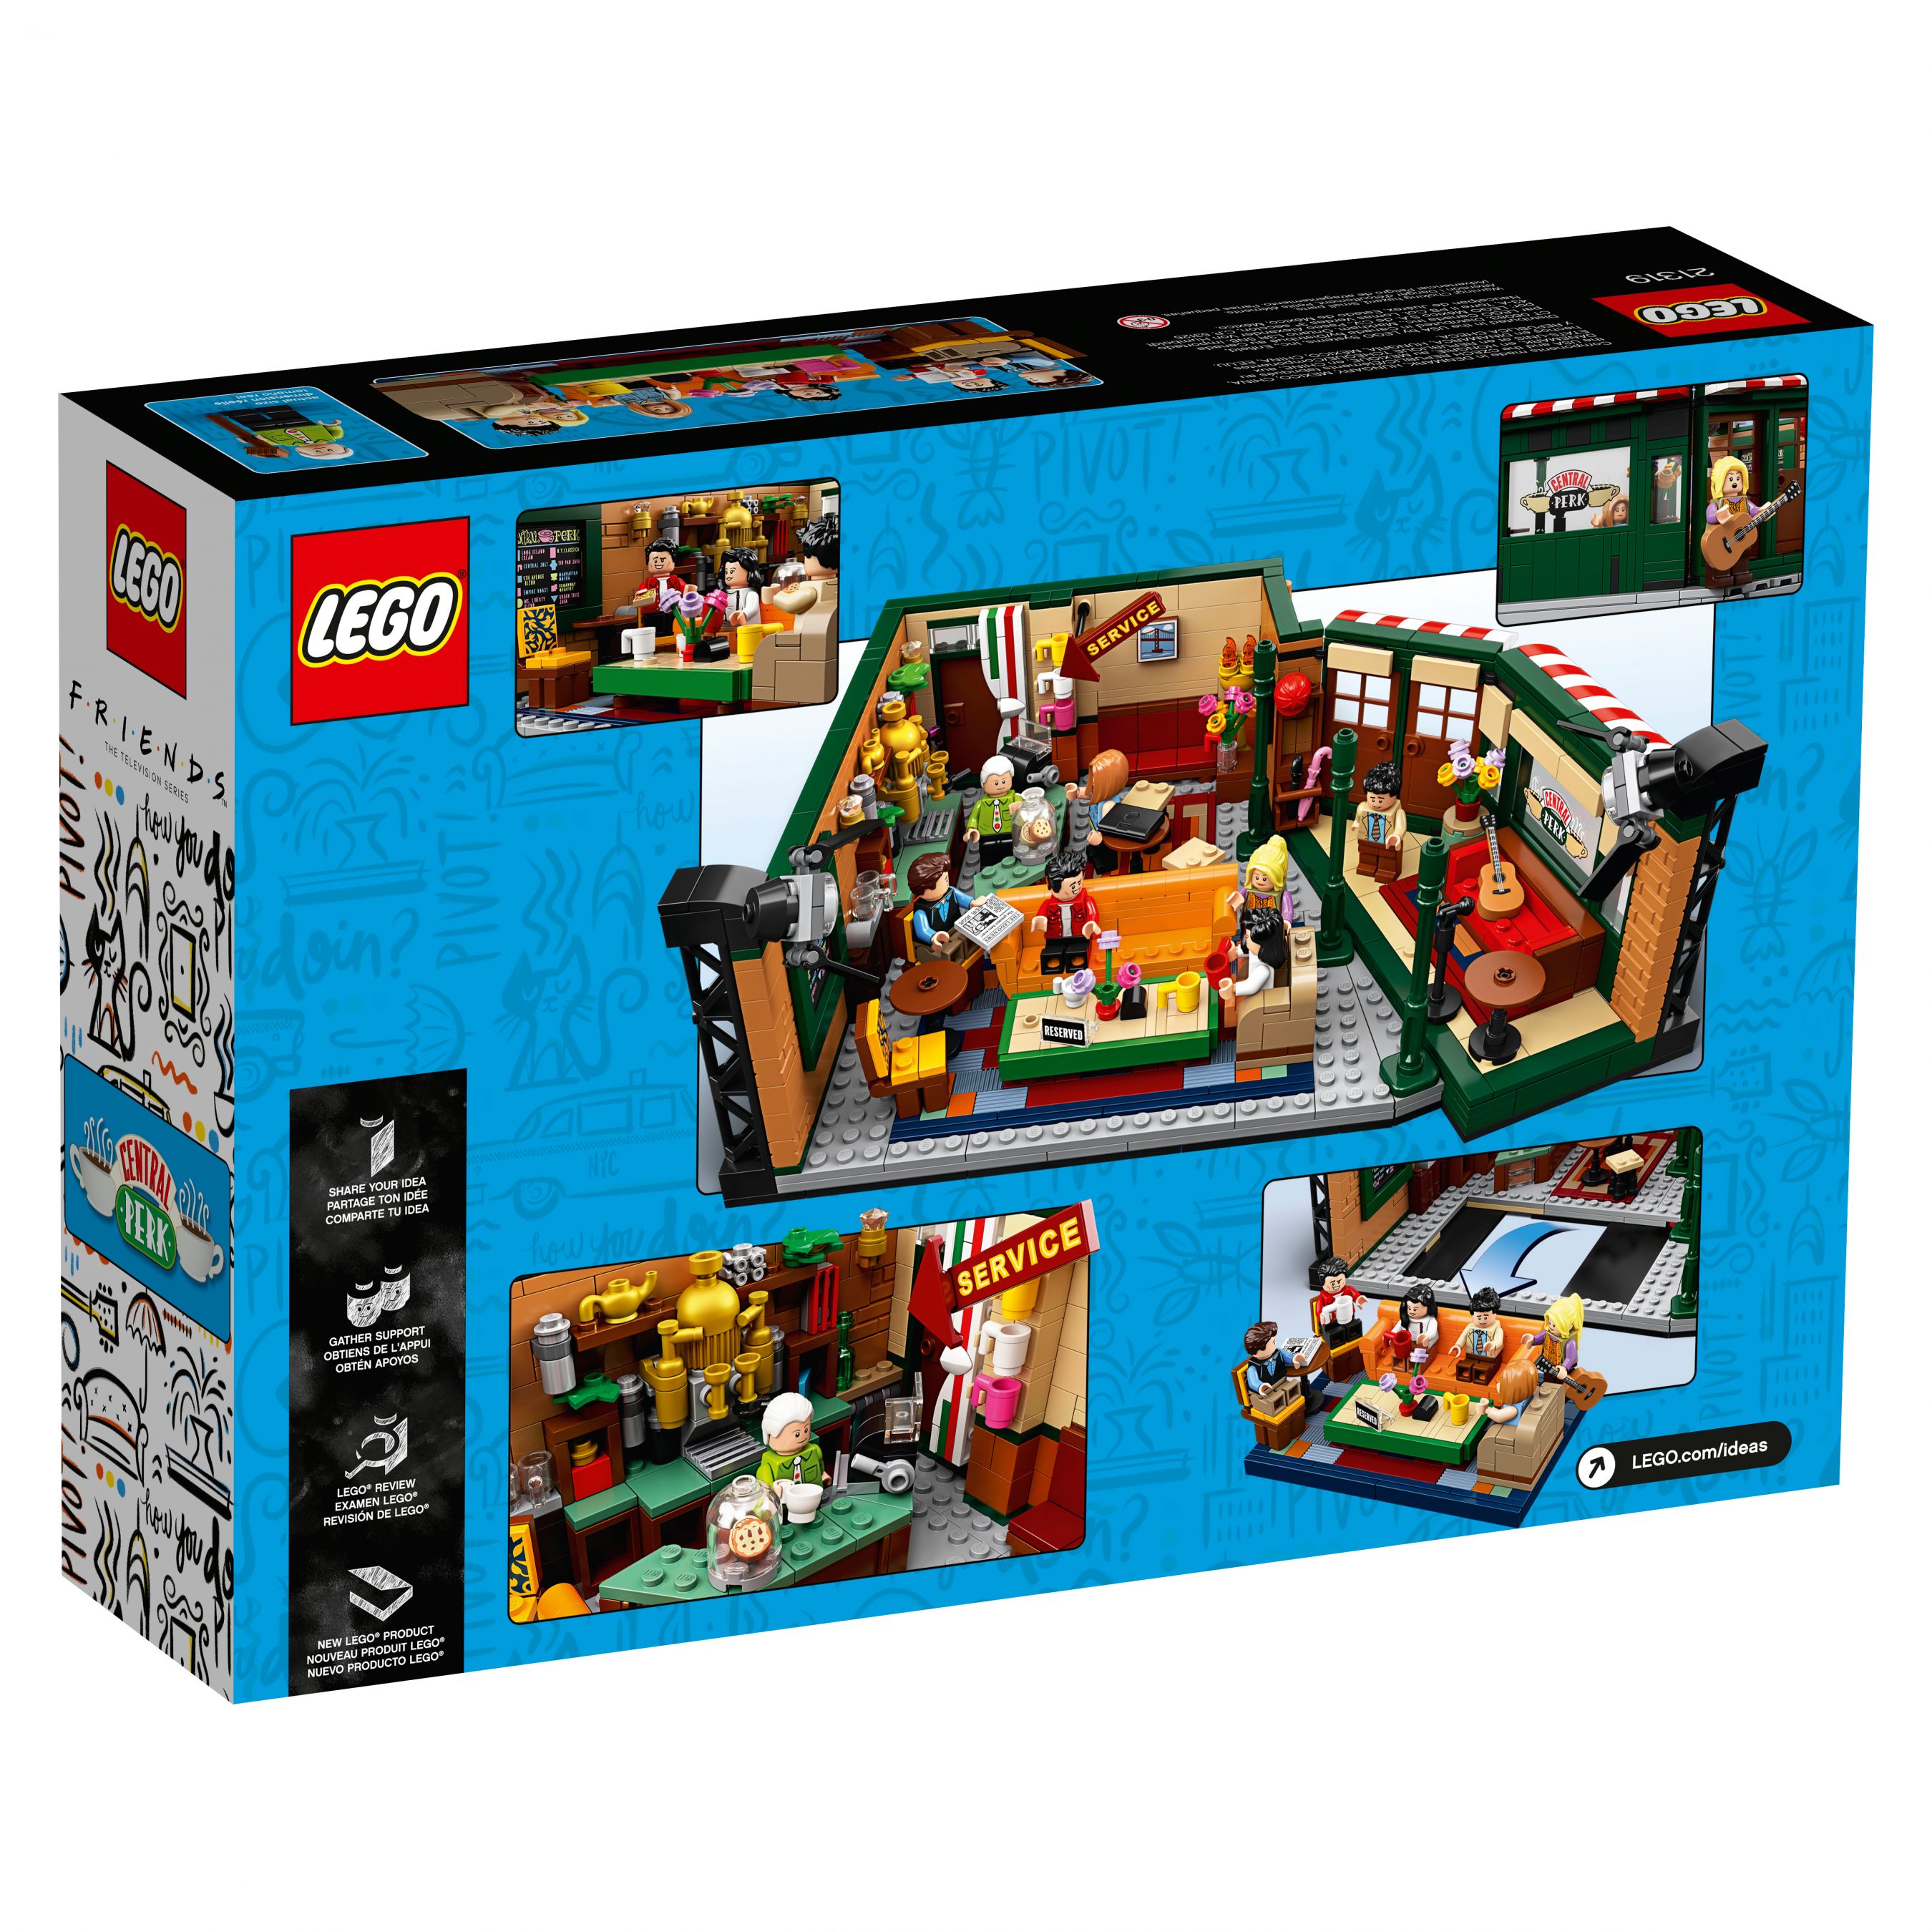 LEGO Ideas 21319 Central Perk LEGO_21319_alt8.jpg